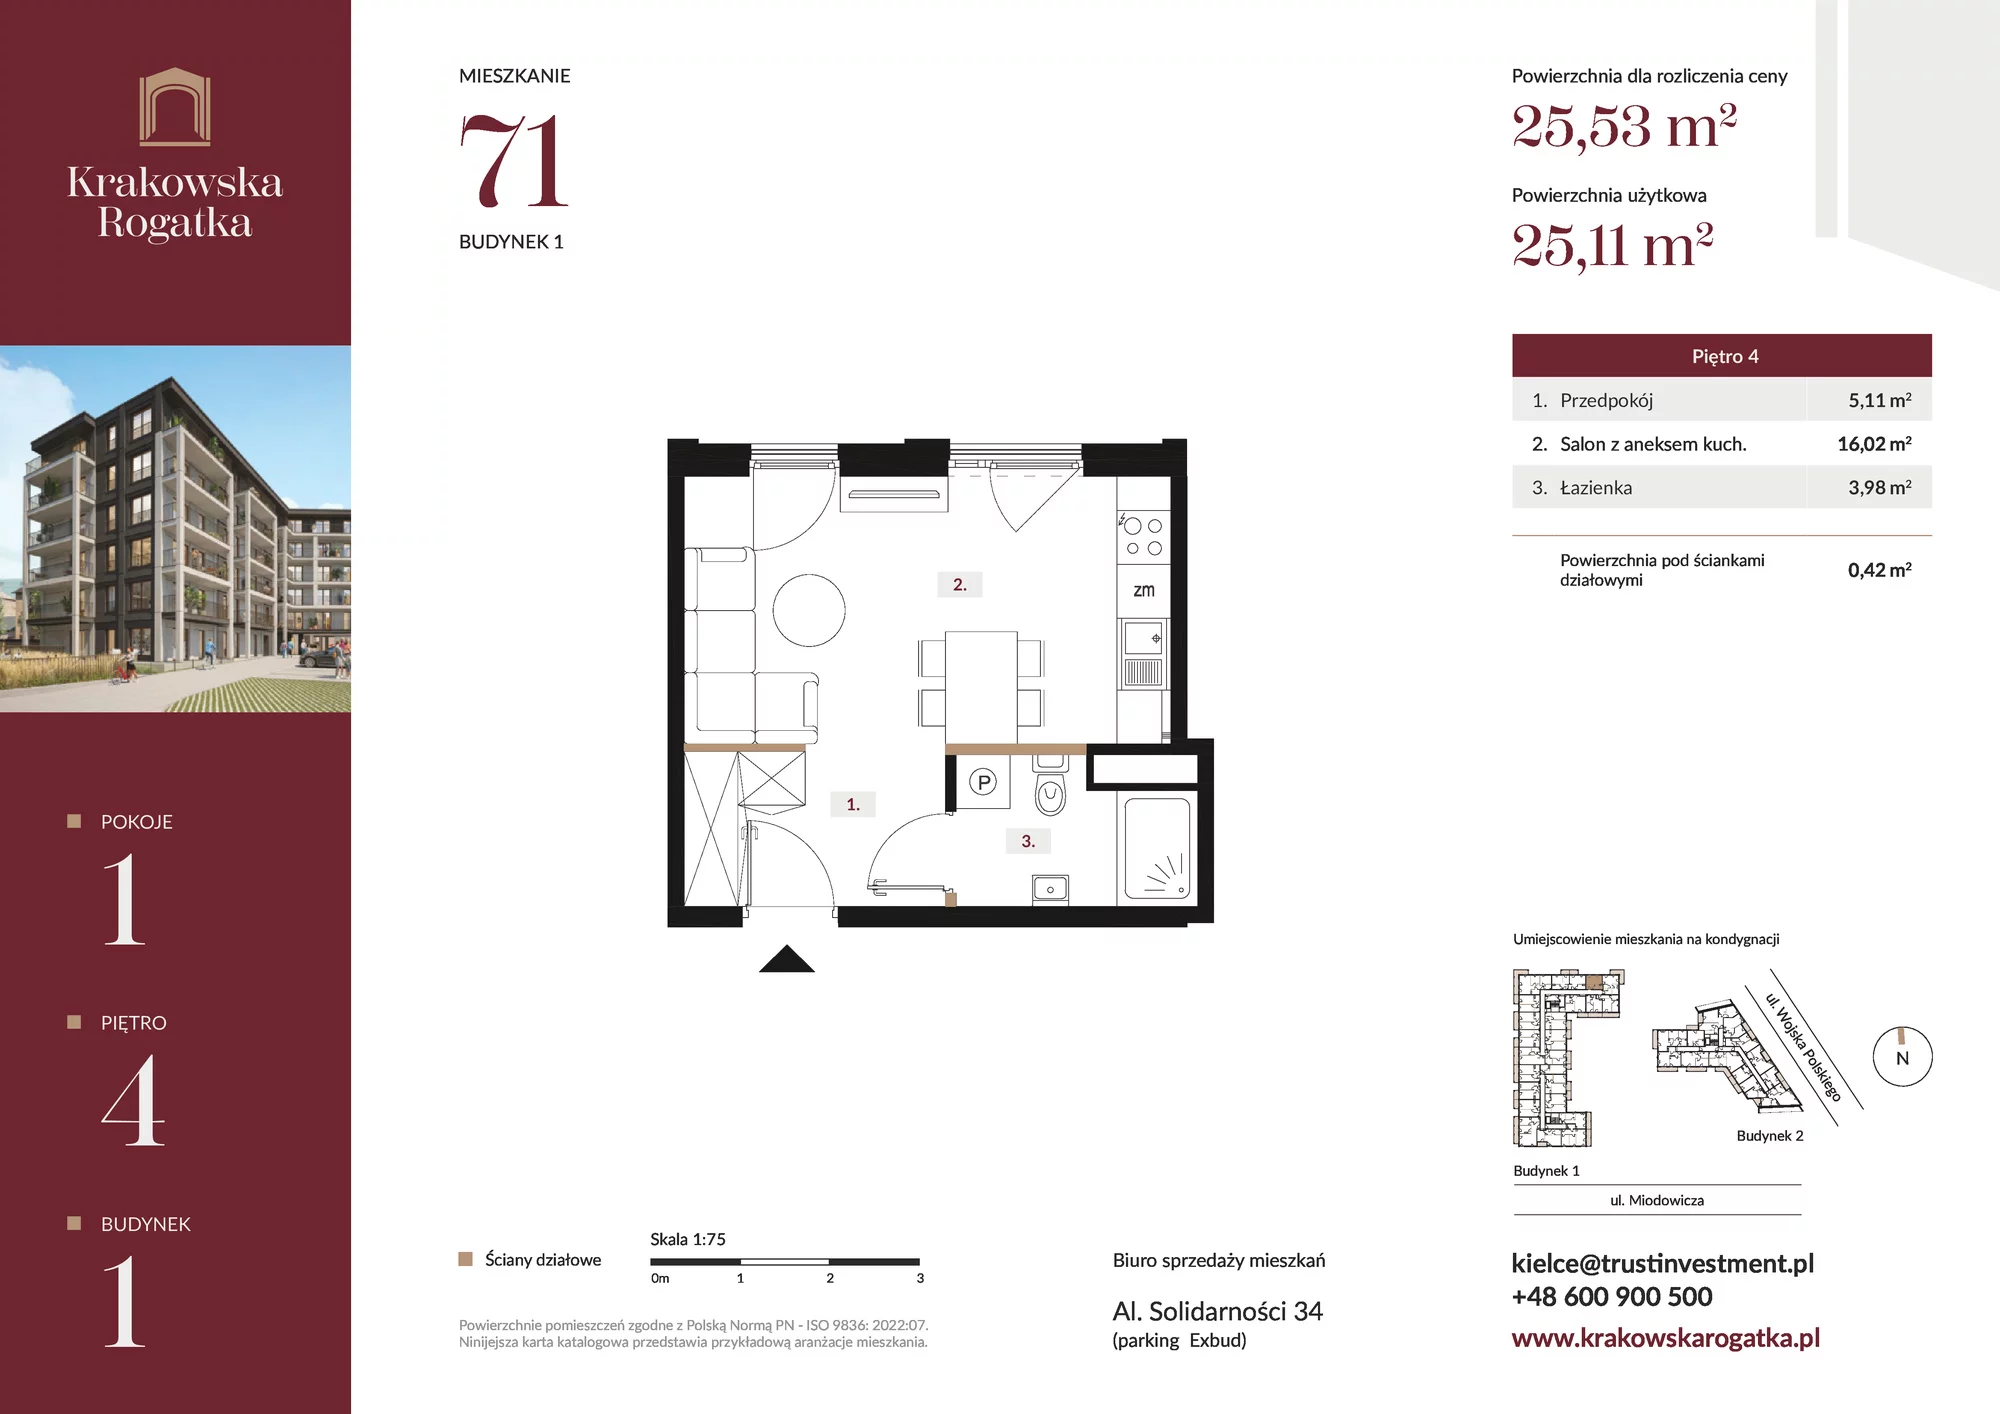 Mieszkanie 25,53 m², piętro 4, oferta nr Budynek 1 Mieszkanie 71, Krakowska Rogatka, Kielce, ul. Miodowicza 1